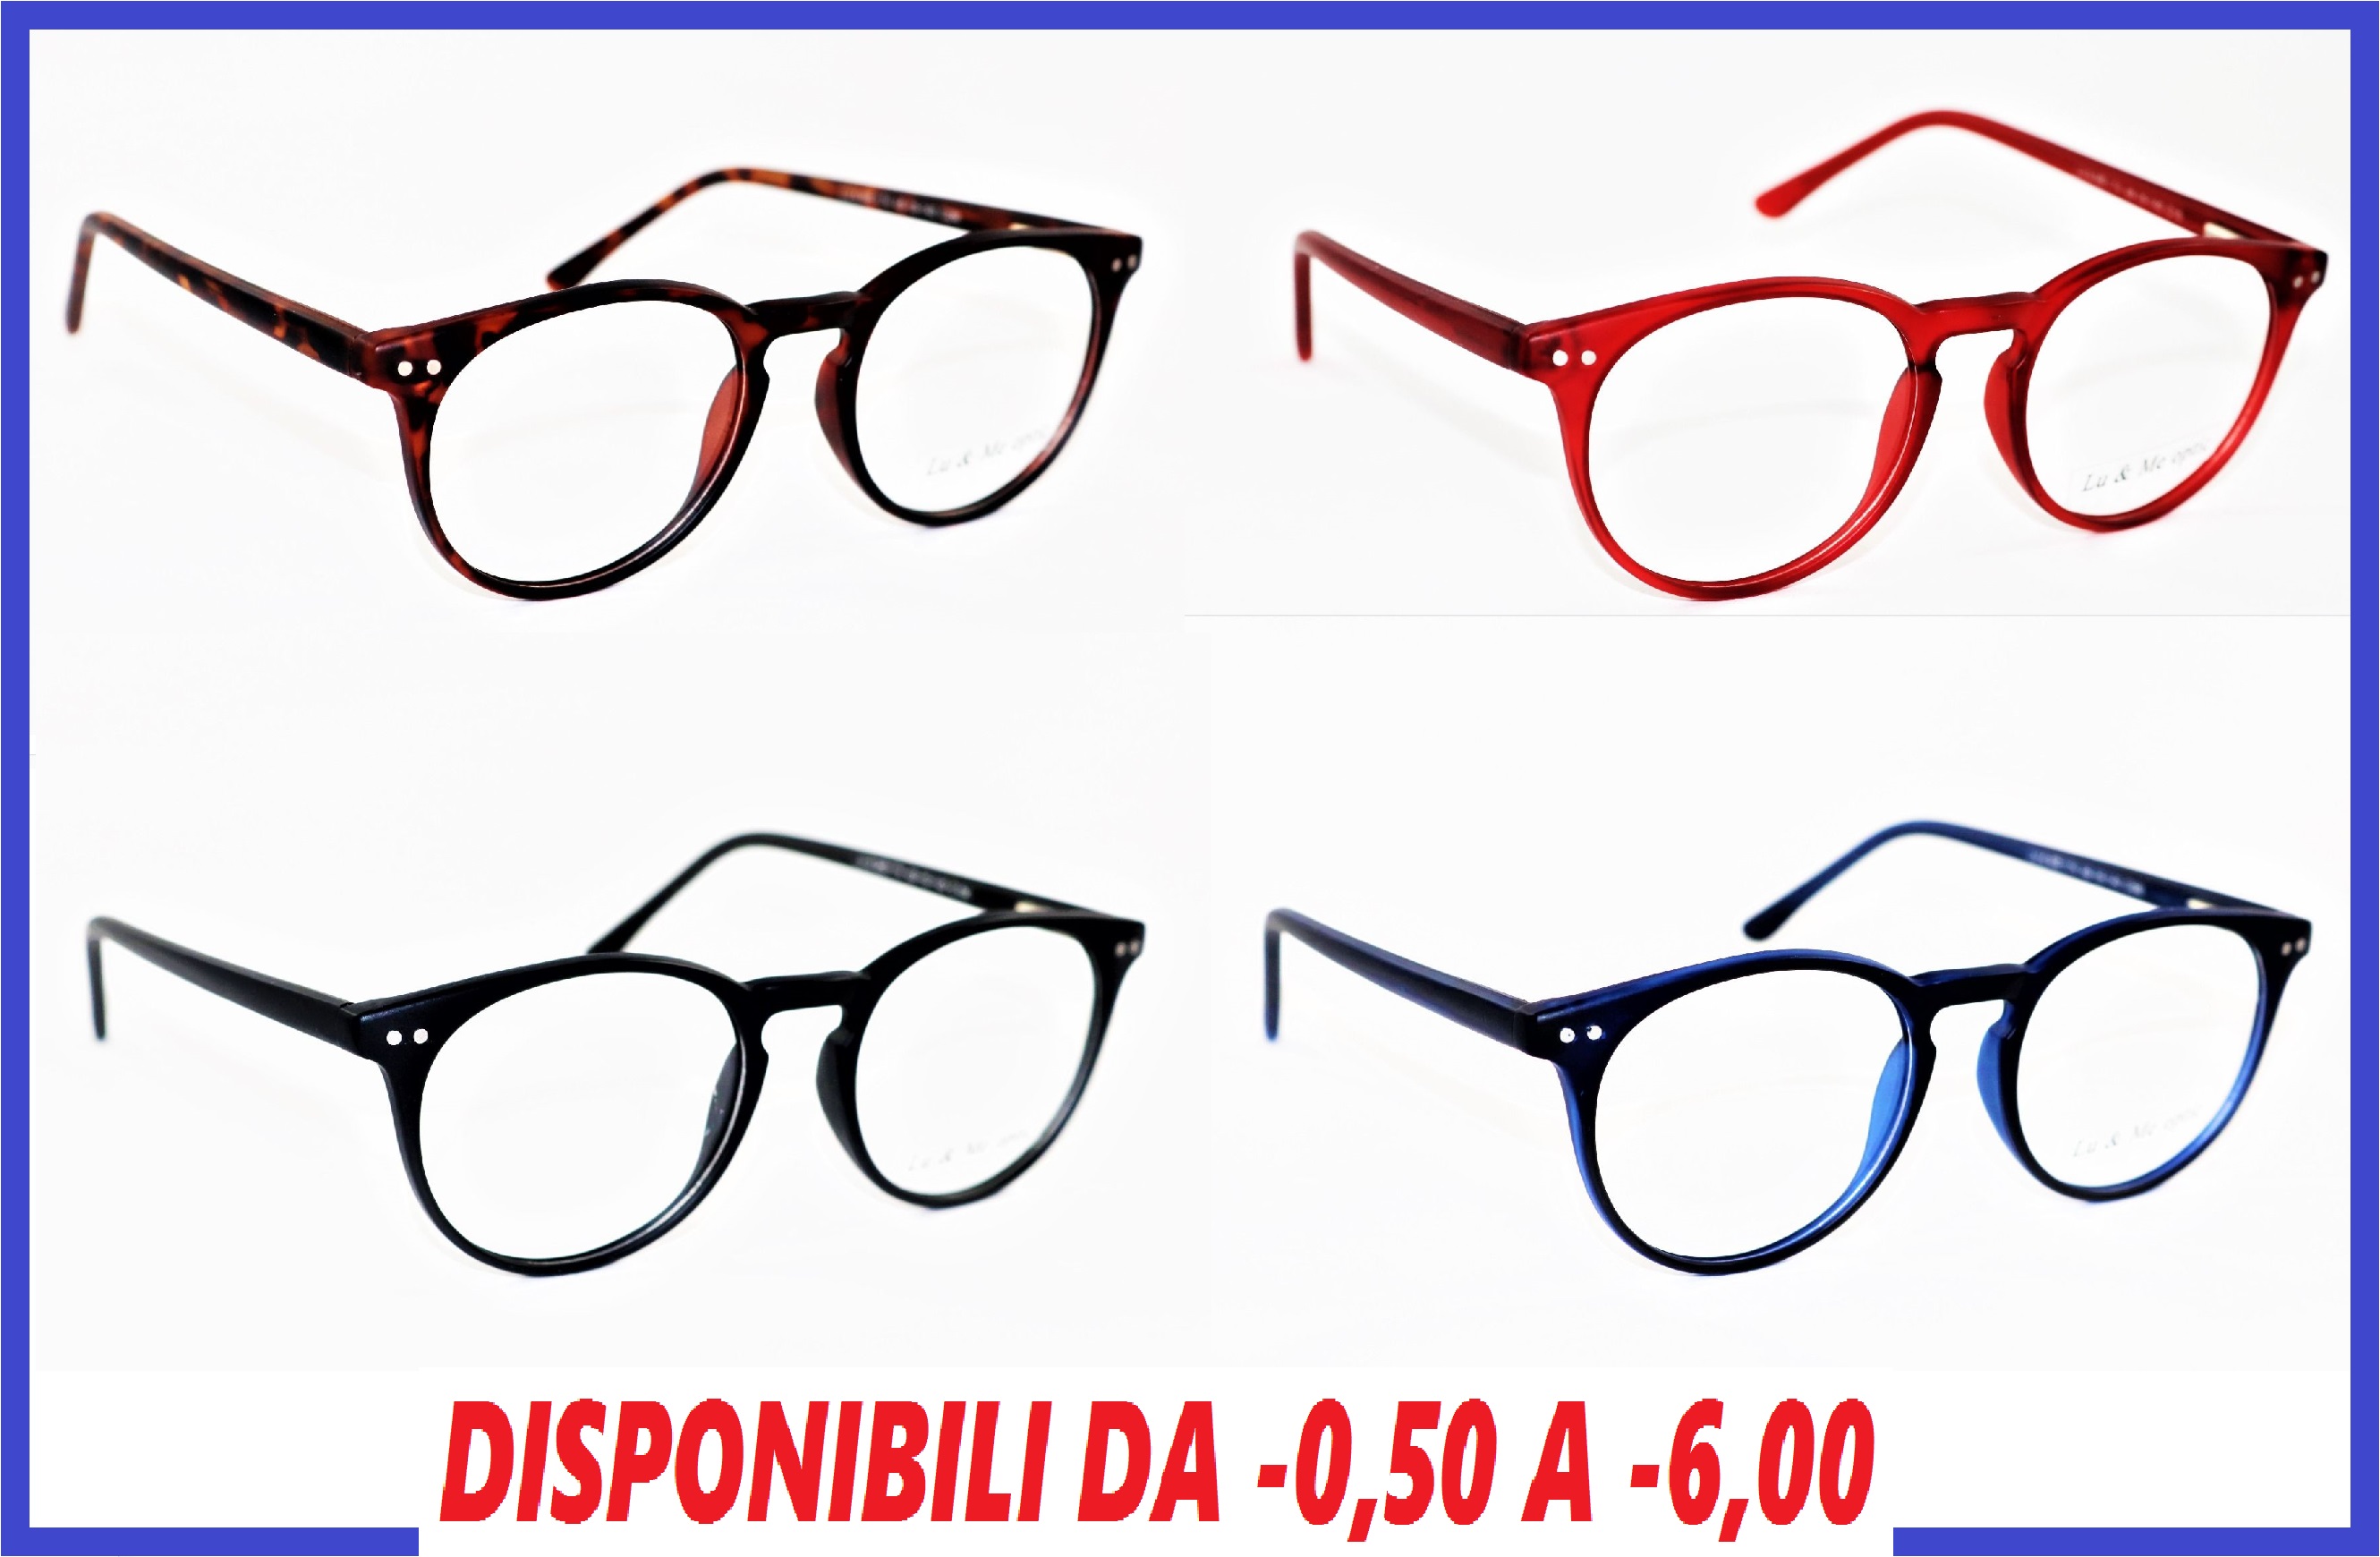 occhiali da vista graduati per miopia uomo donna occhiale per computer da pc lenti graduate antiriflesso montatura rotondi occhiale tondi unisex blu e tartaruga montature tartarugati graduati diottrie -1 -2 -3 -4 -5 -6 -0.50 -1.50 -2.50 -3.50 -4.50 -5.50 -50 occhiali da miope per miopia antiriflesso lenti sottili per miope